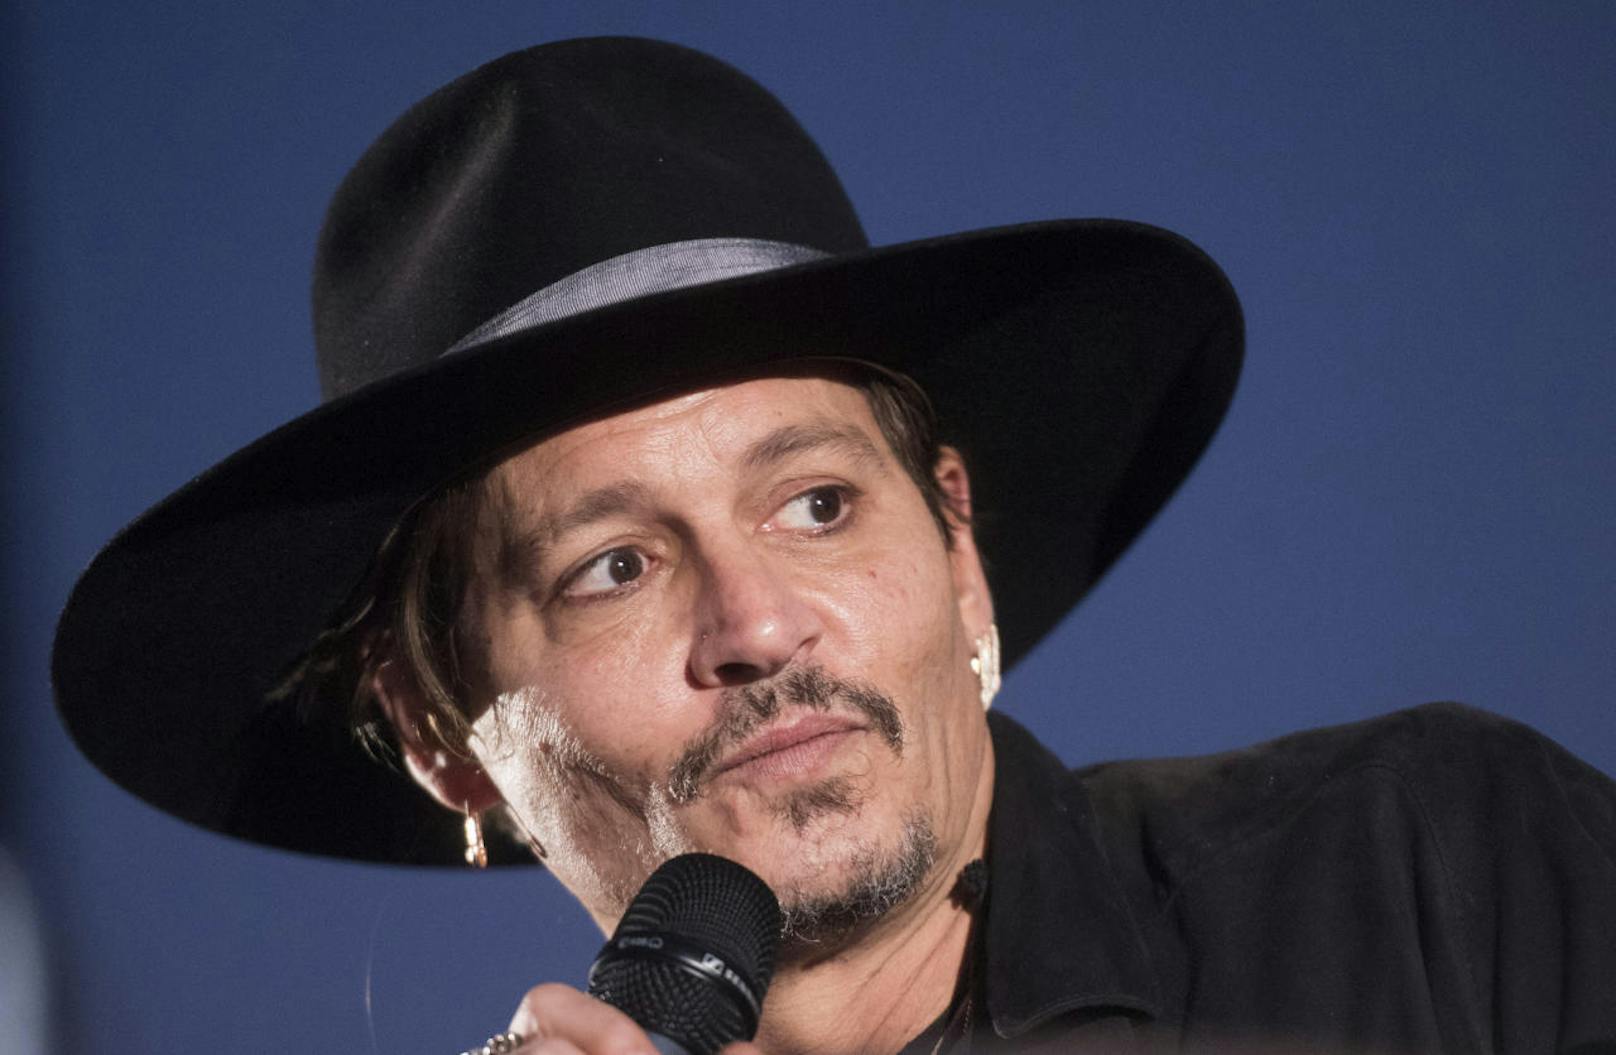 2009: Johnny Depp